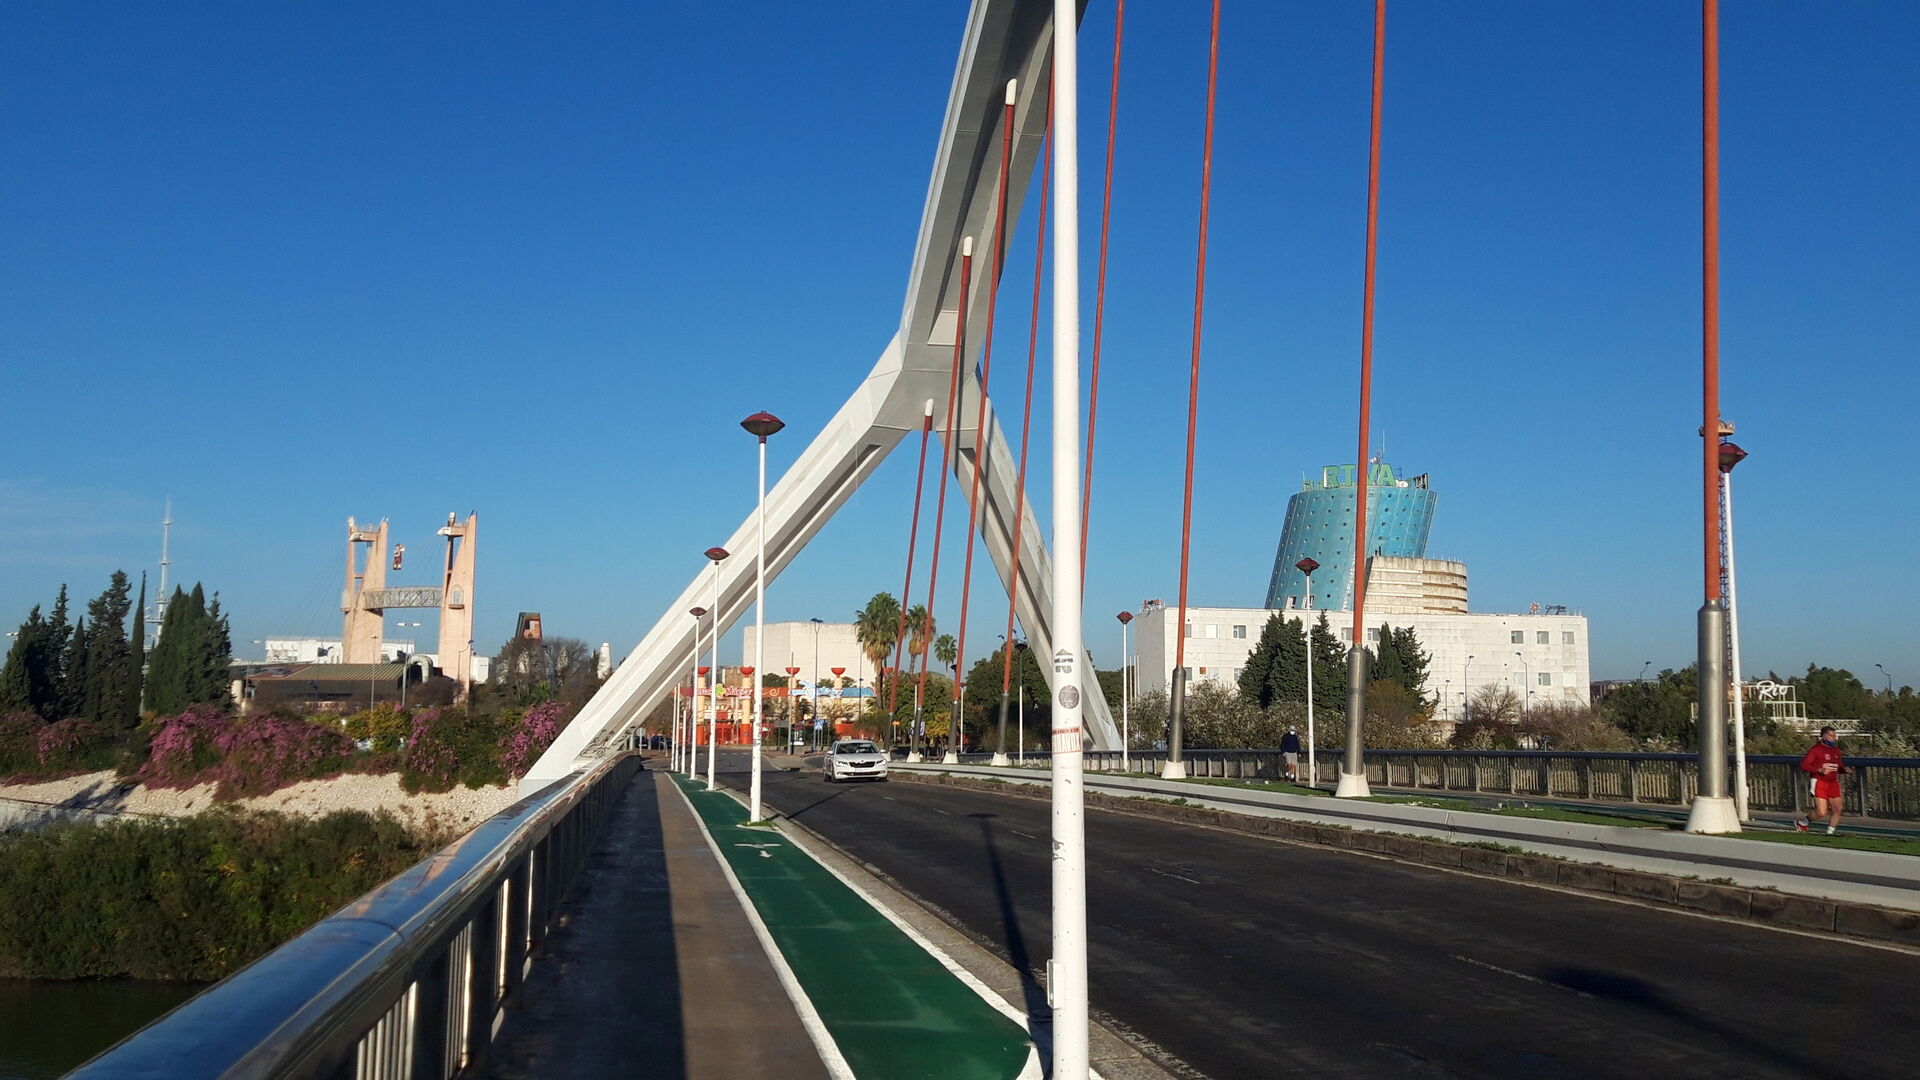 Comenzamos en el Puente de la Barqueta, antigua puerta de la Expo 92.